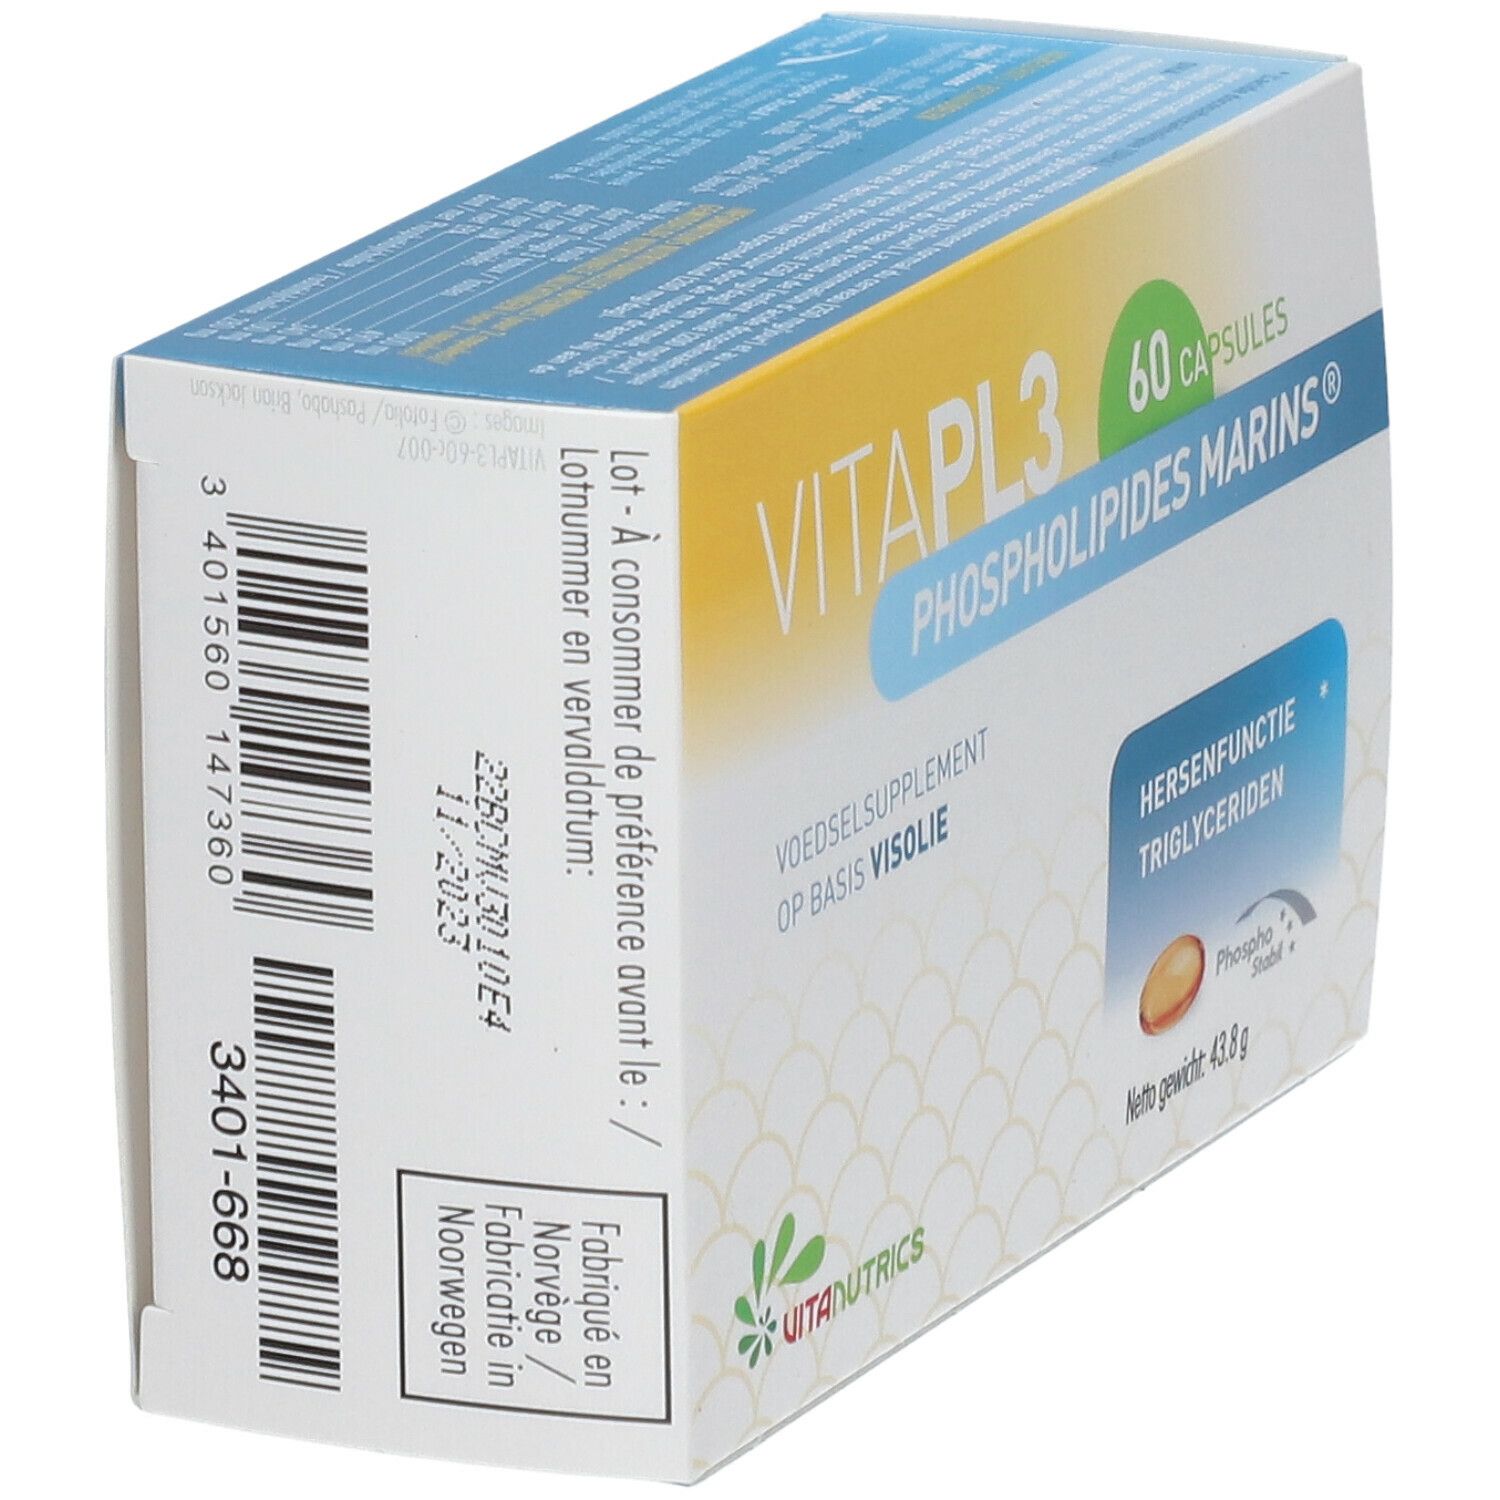 Vitanutrics Vita-PL3 Phospholipides Marins®